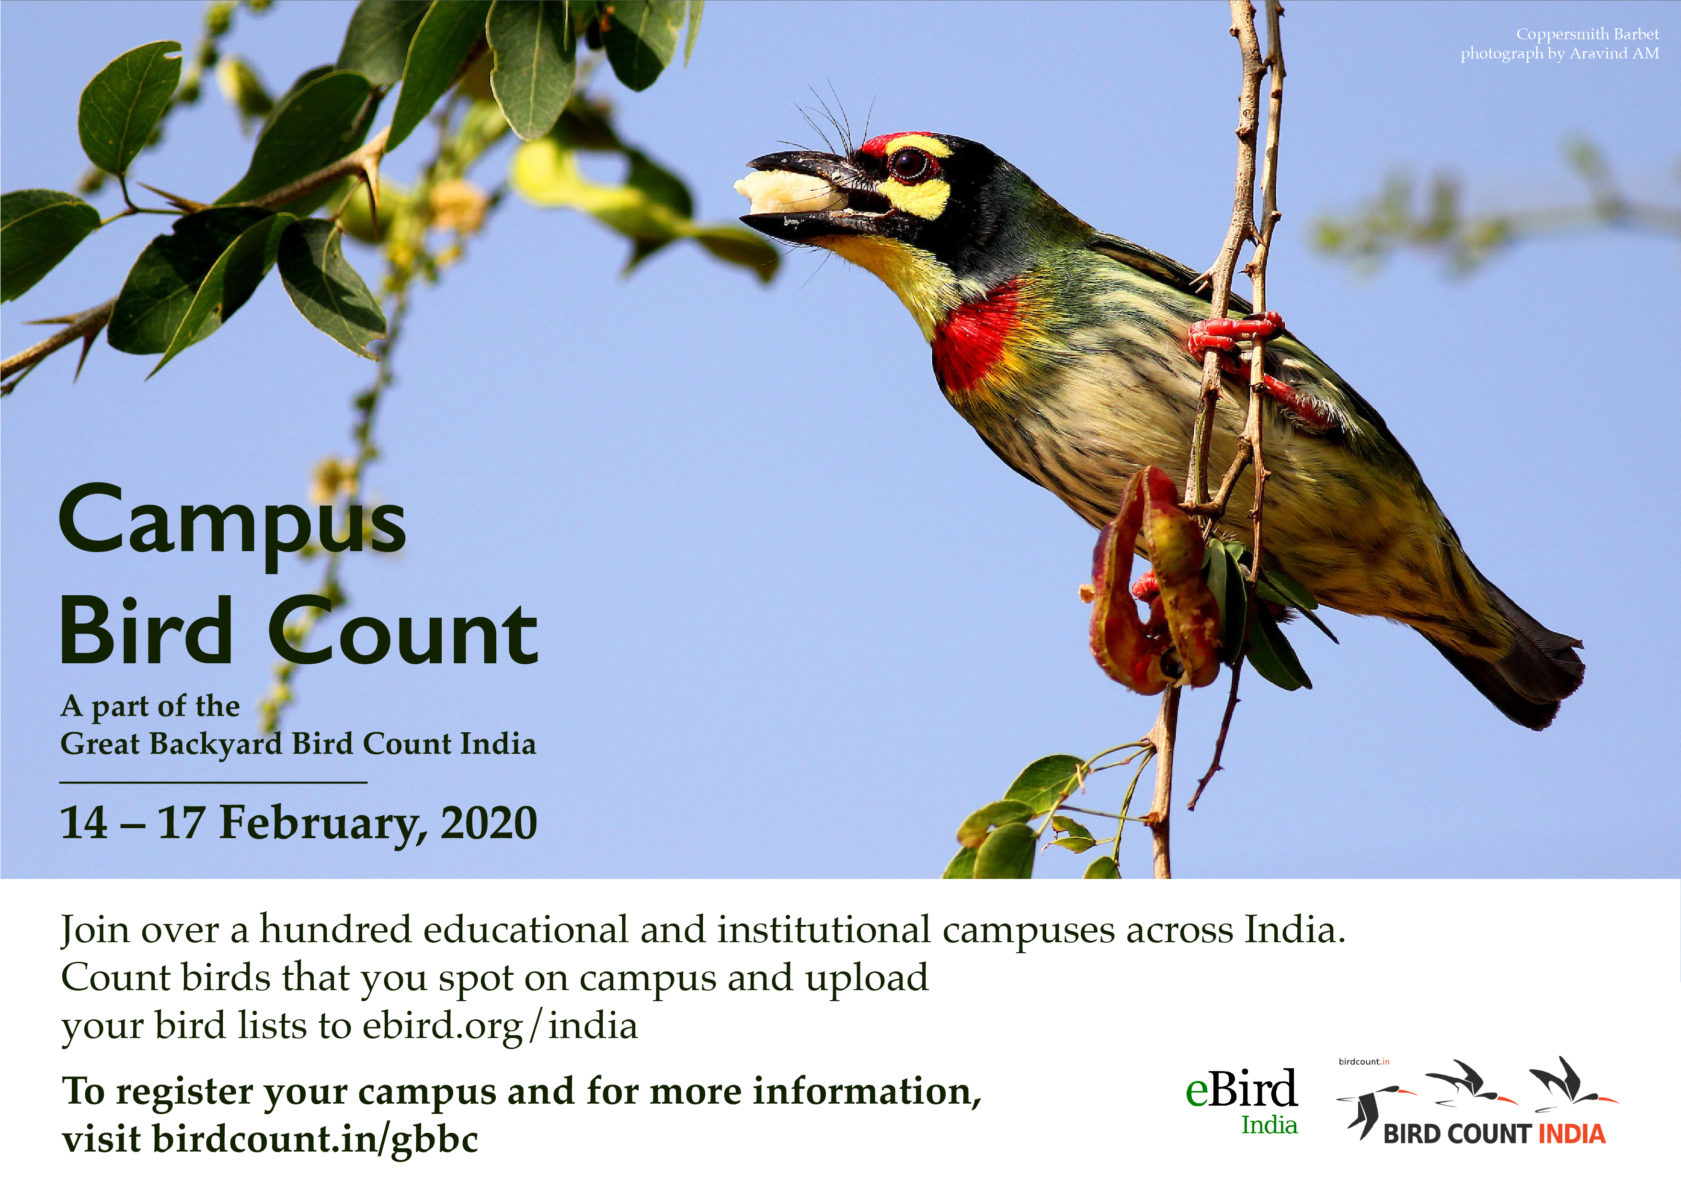 Campus Bird Count 2020 - Bird Count India